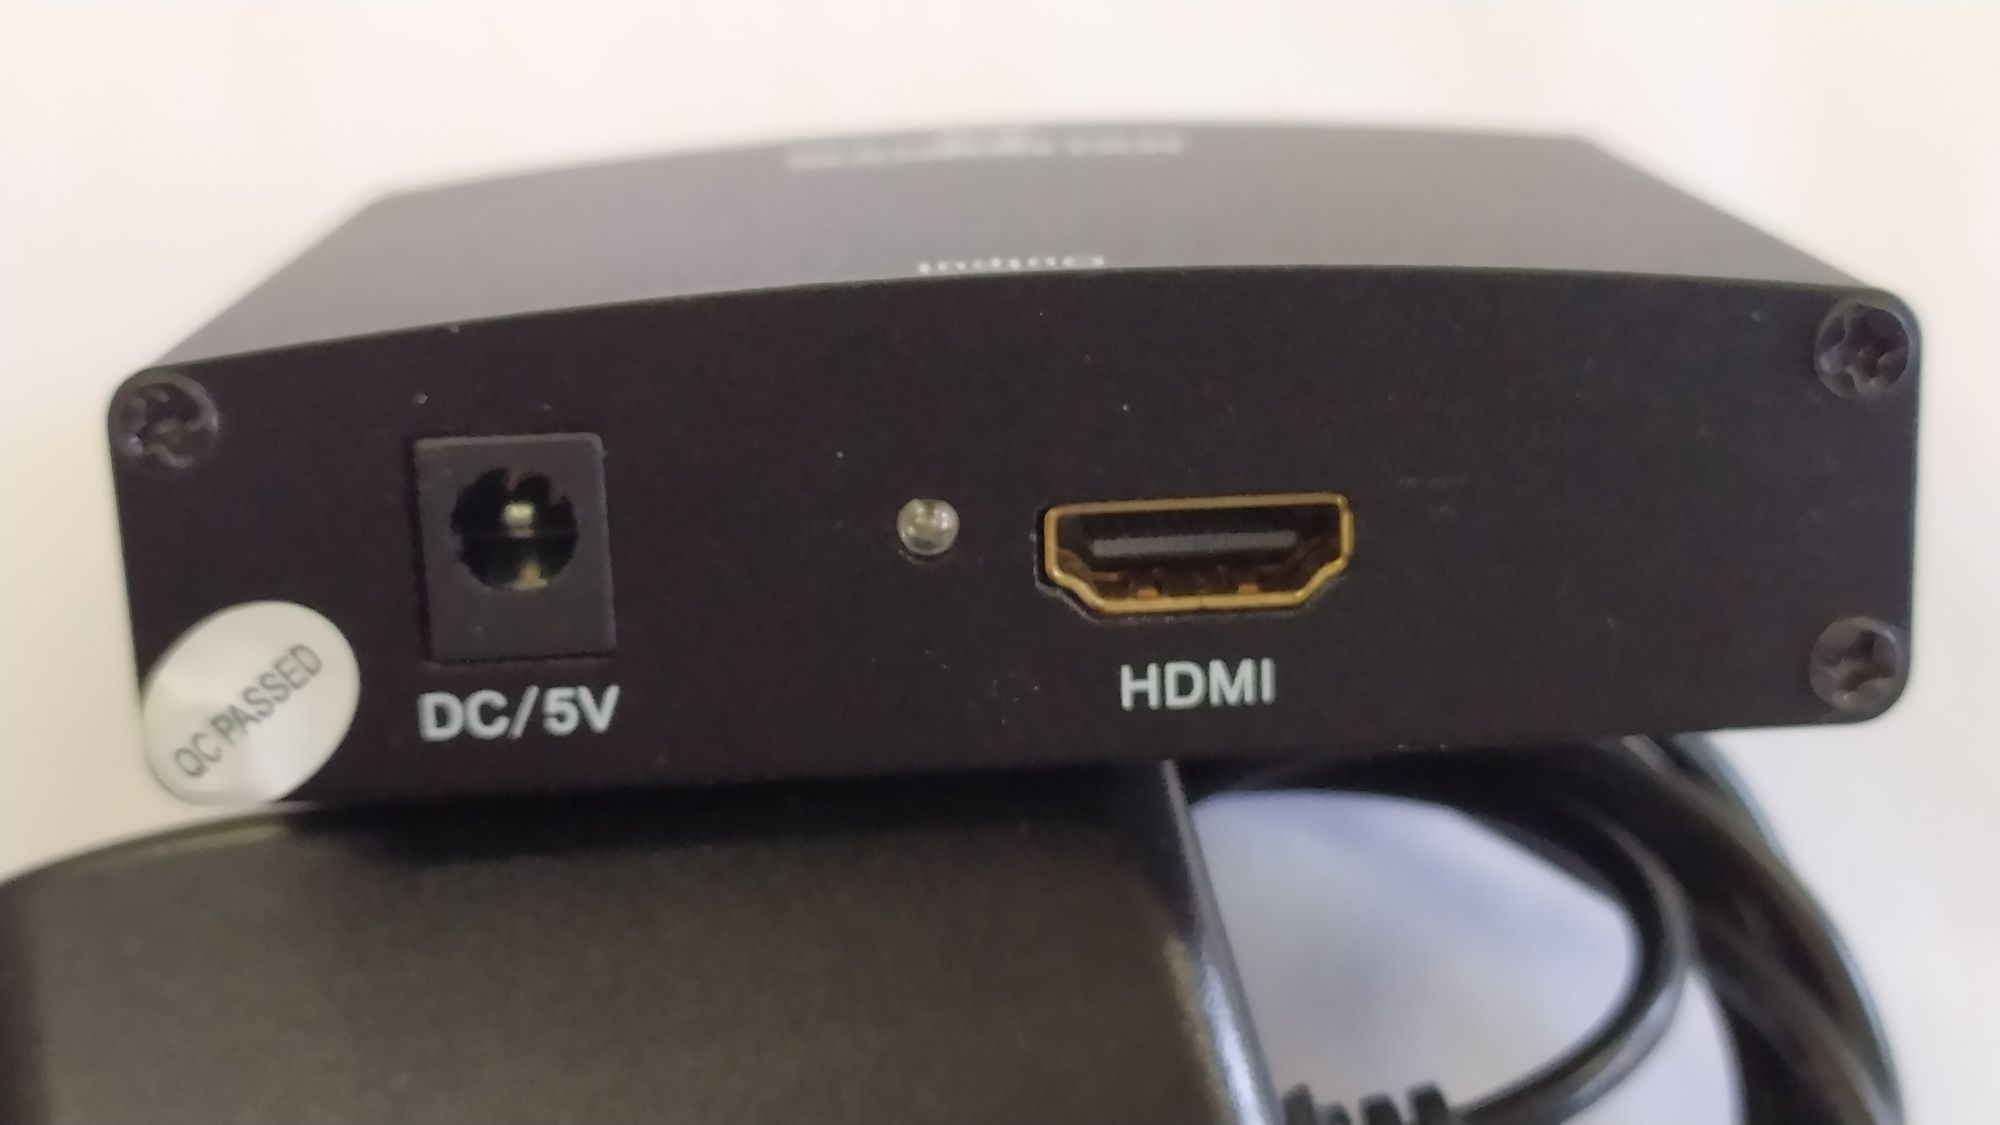 Konwerter VGA na HDMI